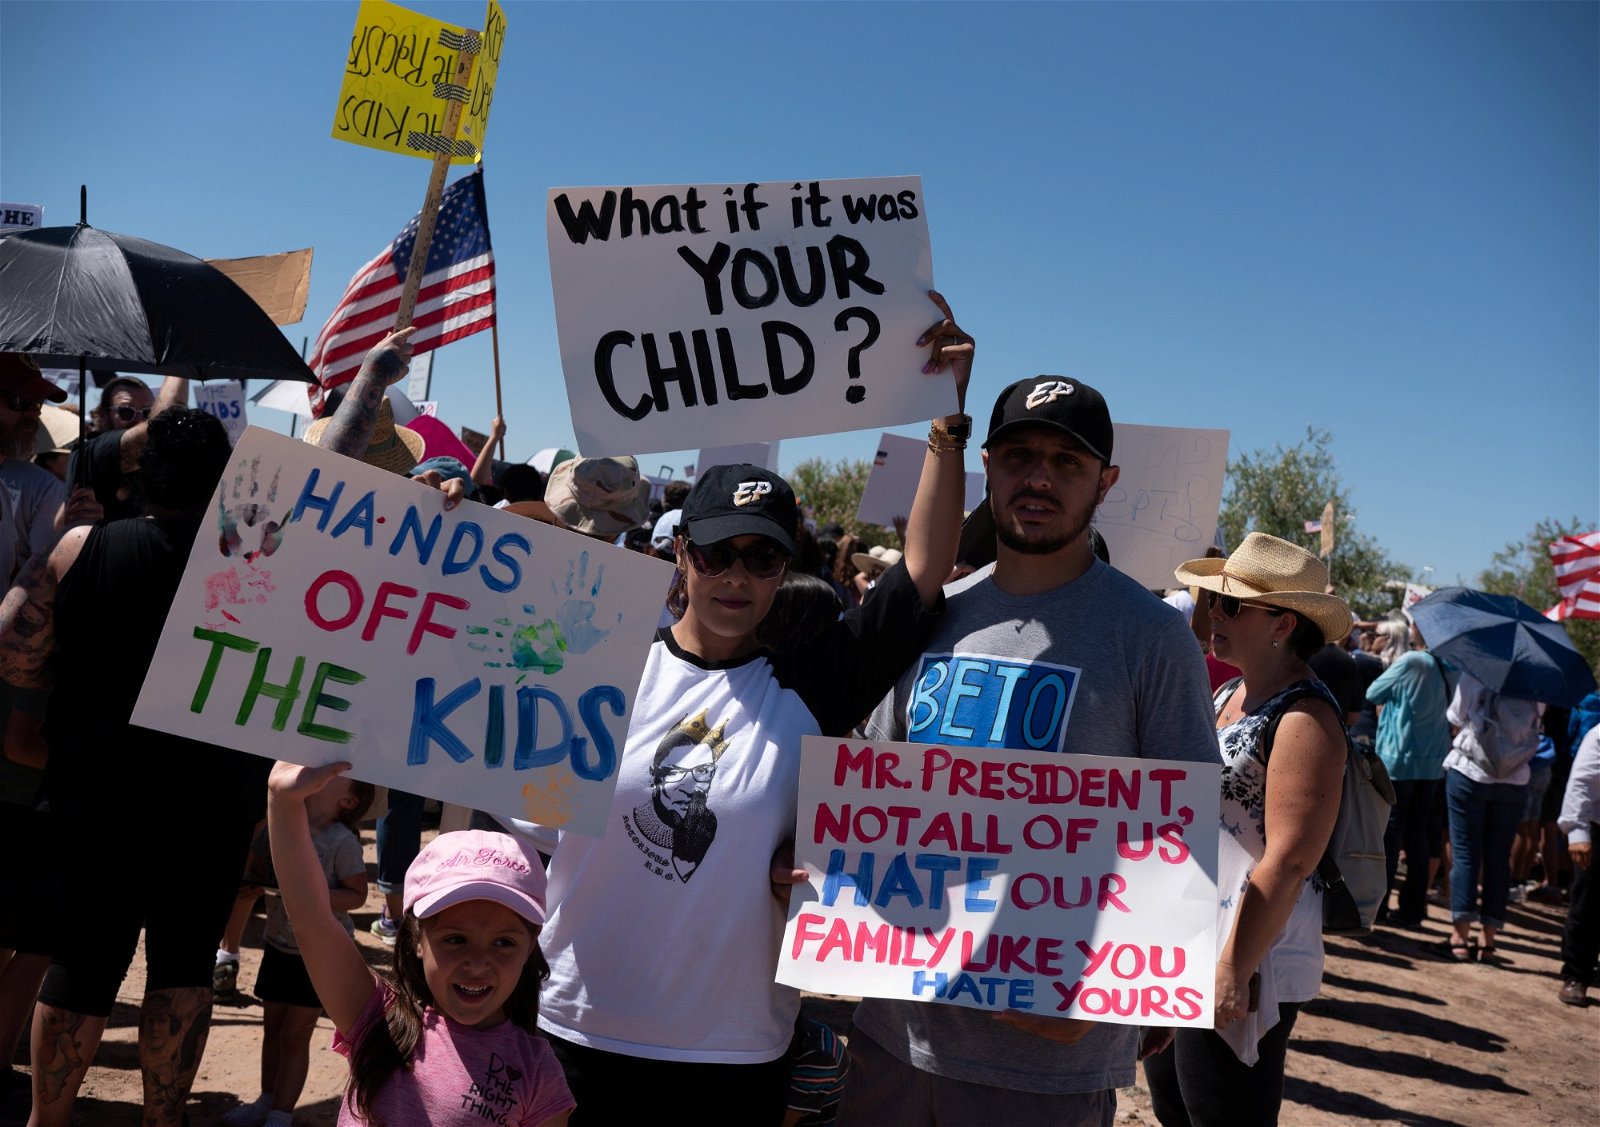 反对政府“零容忍”政策的民众，周日在得州美墨边境的过境中心外集会示威。示威者拿著自制纸牌，要求政府放过孩子，更调侃特朗普讨厌自己的家人。